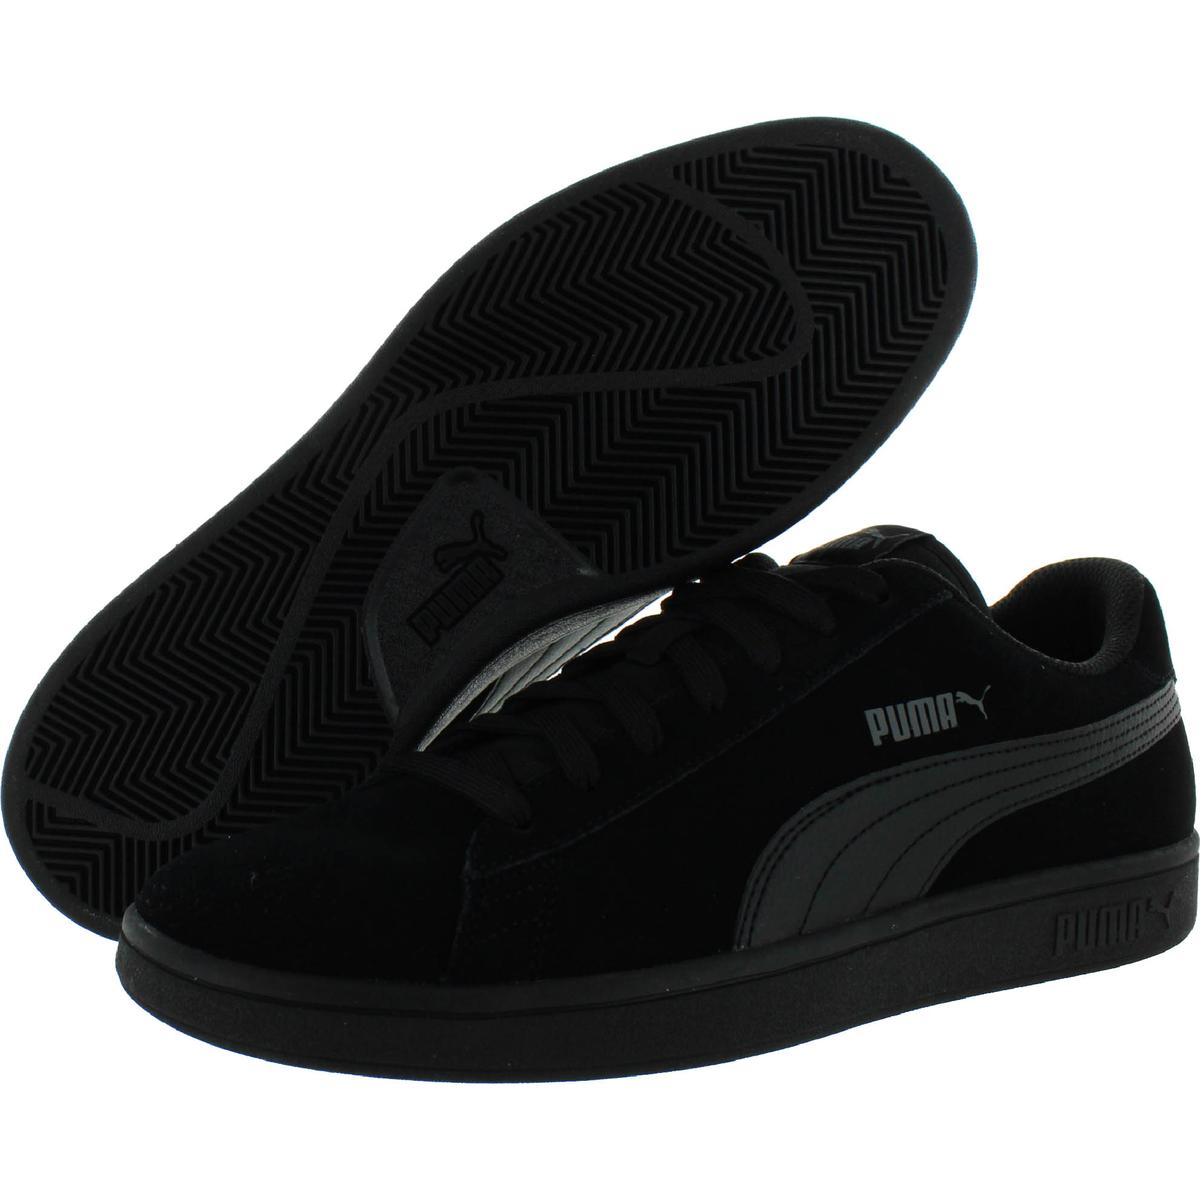 Puma Mens Smash v2 Black Suede Skate Shoes Sneakers 4 Medium (D) BHFO ...